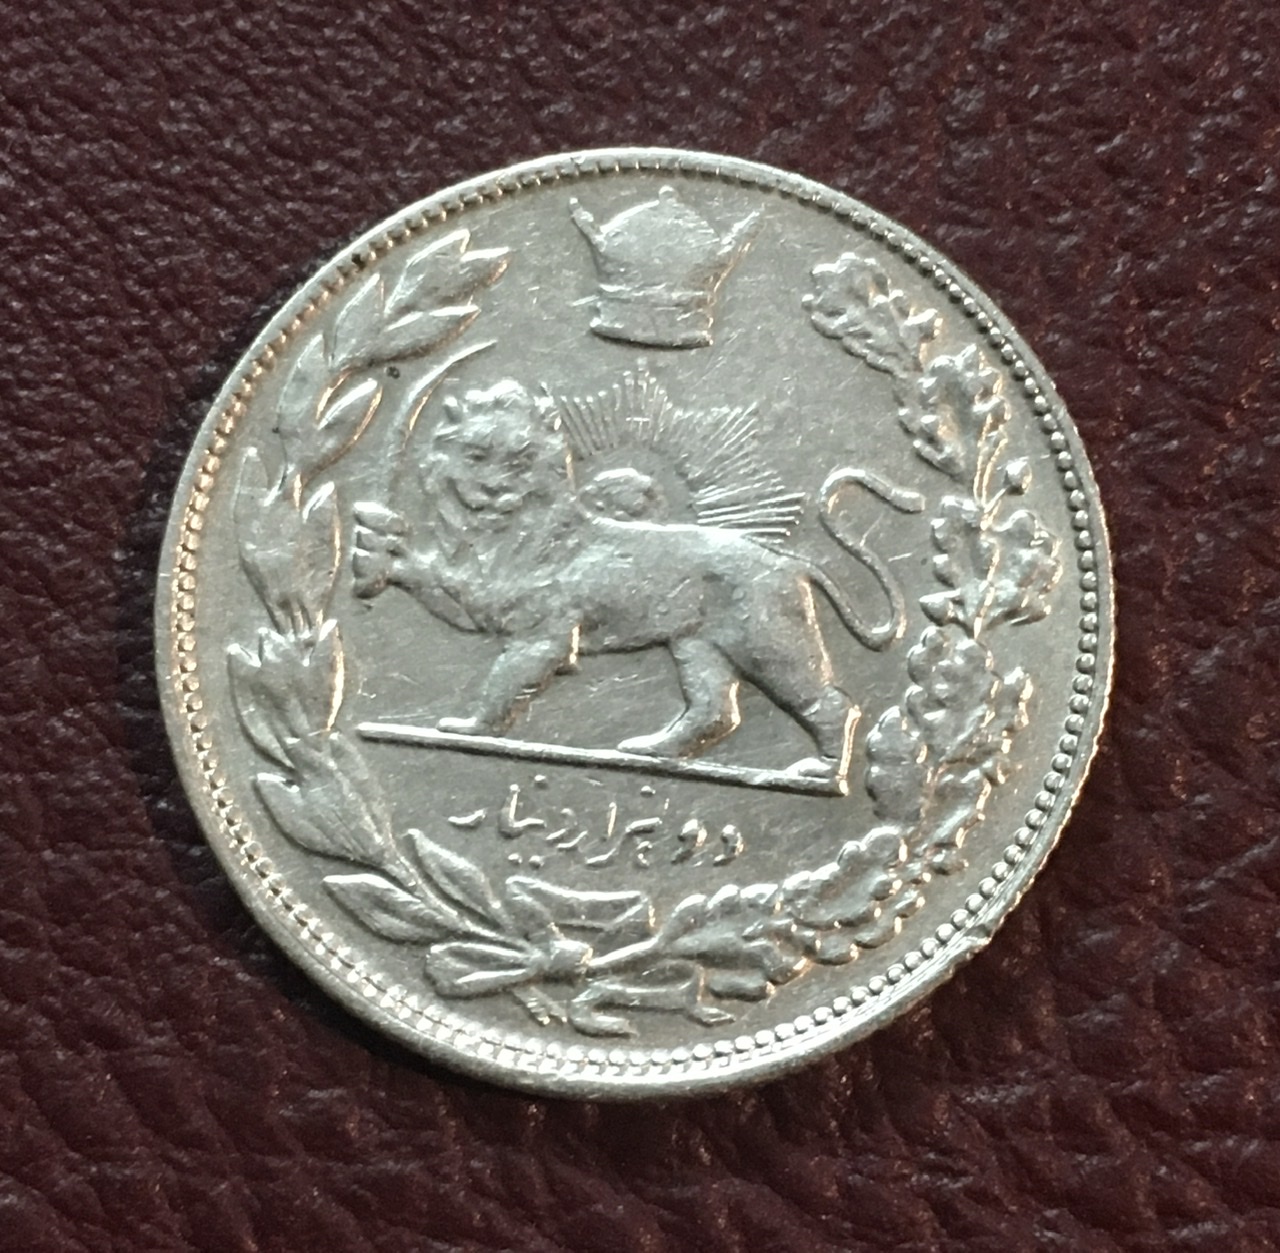 سکه نقره دوهزار دینار تصویری ١٣٠۶ رضا شاه ضرب طهران کمیاب